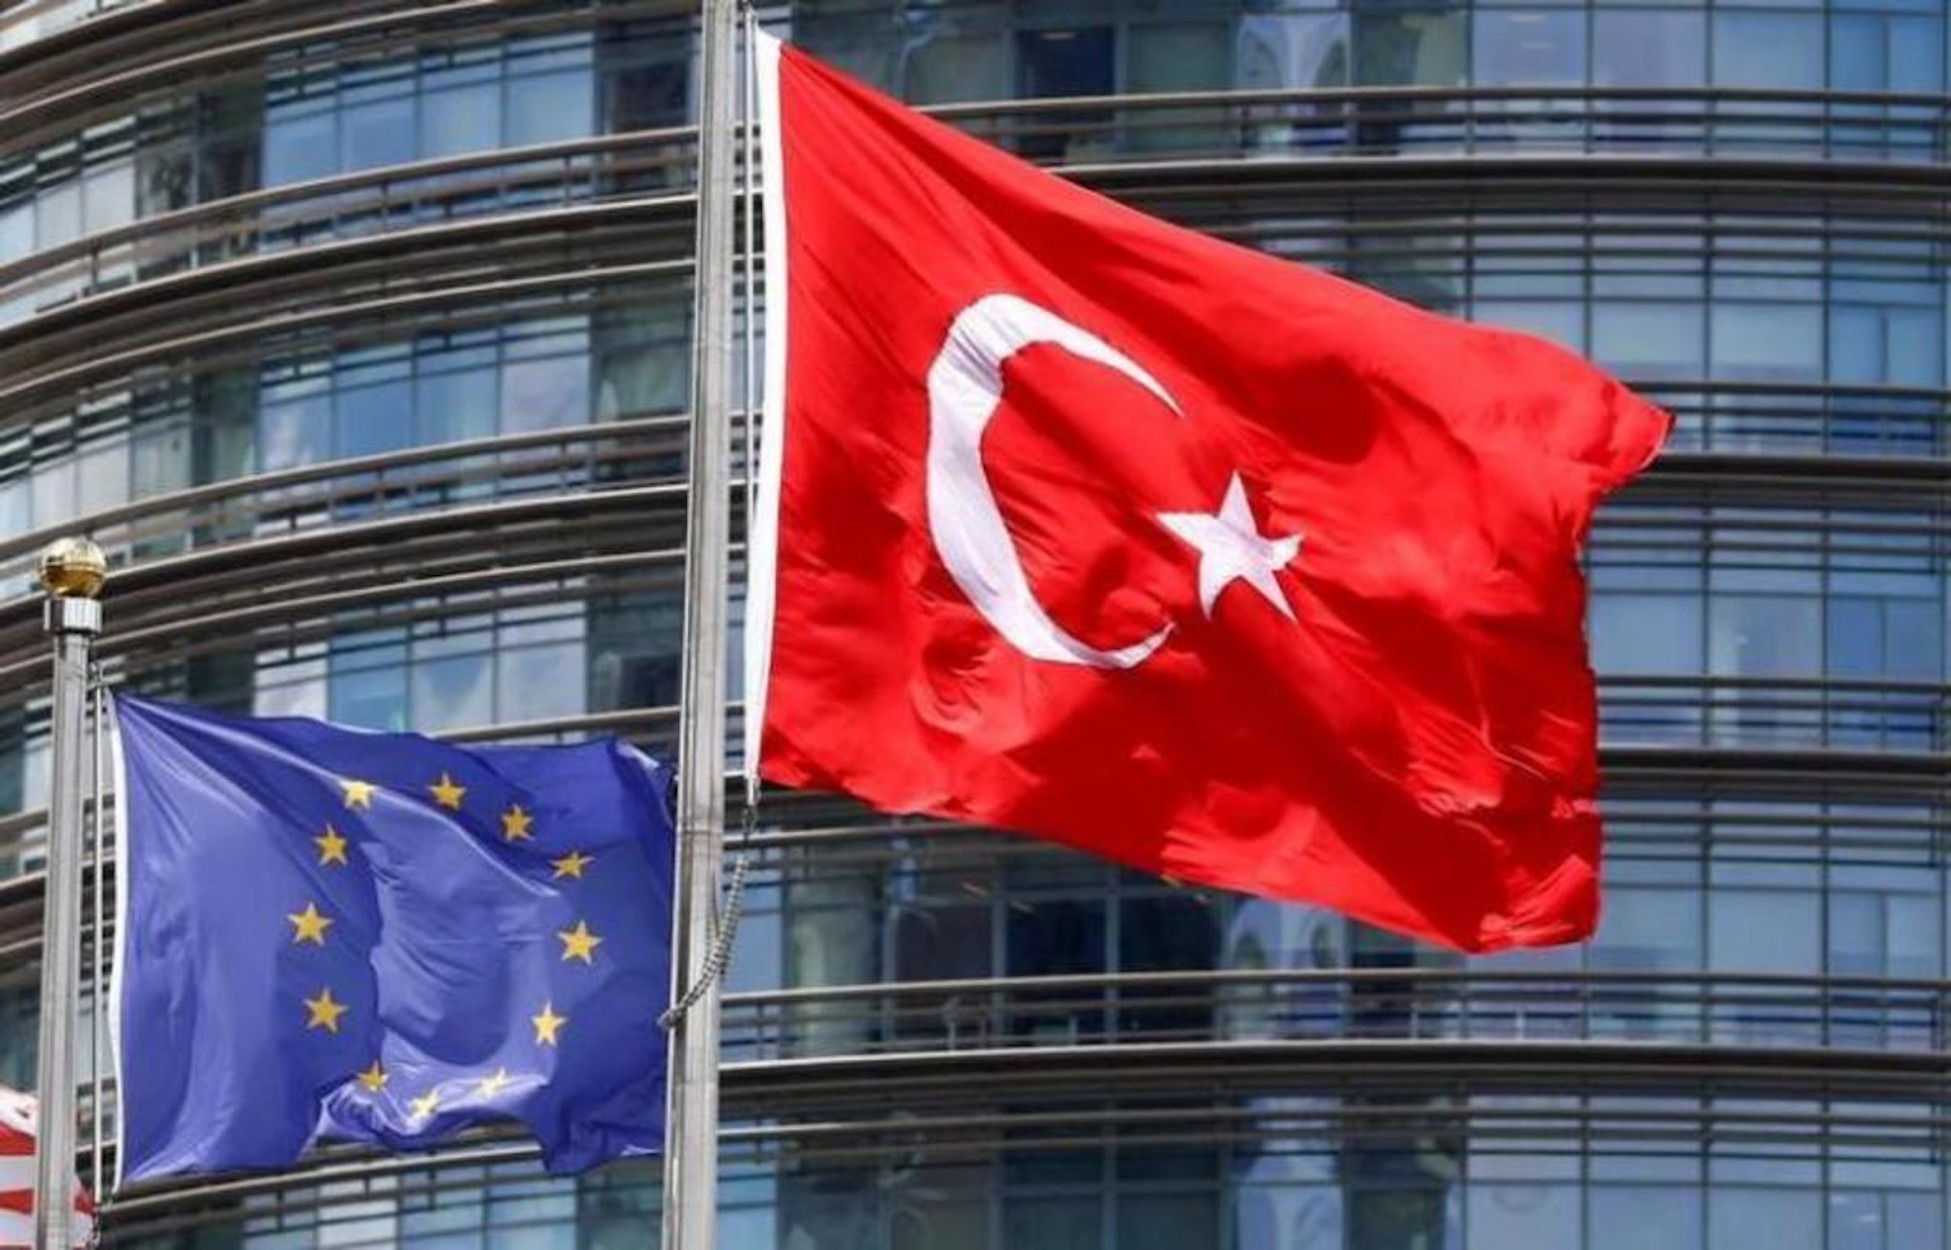 Η Τουρκία θα προσκληθεί στον εορτασμό για τη διεύρυνση της ΕΕ ως υποψήφια χώρα προς ένταξη